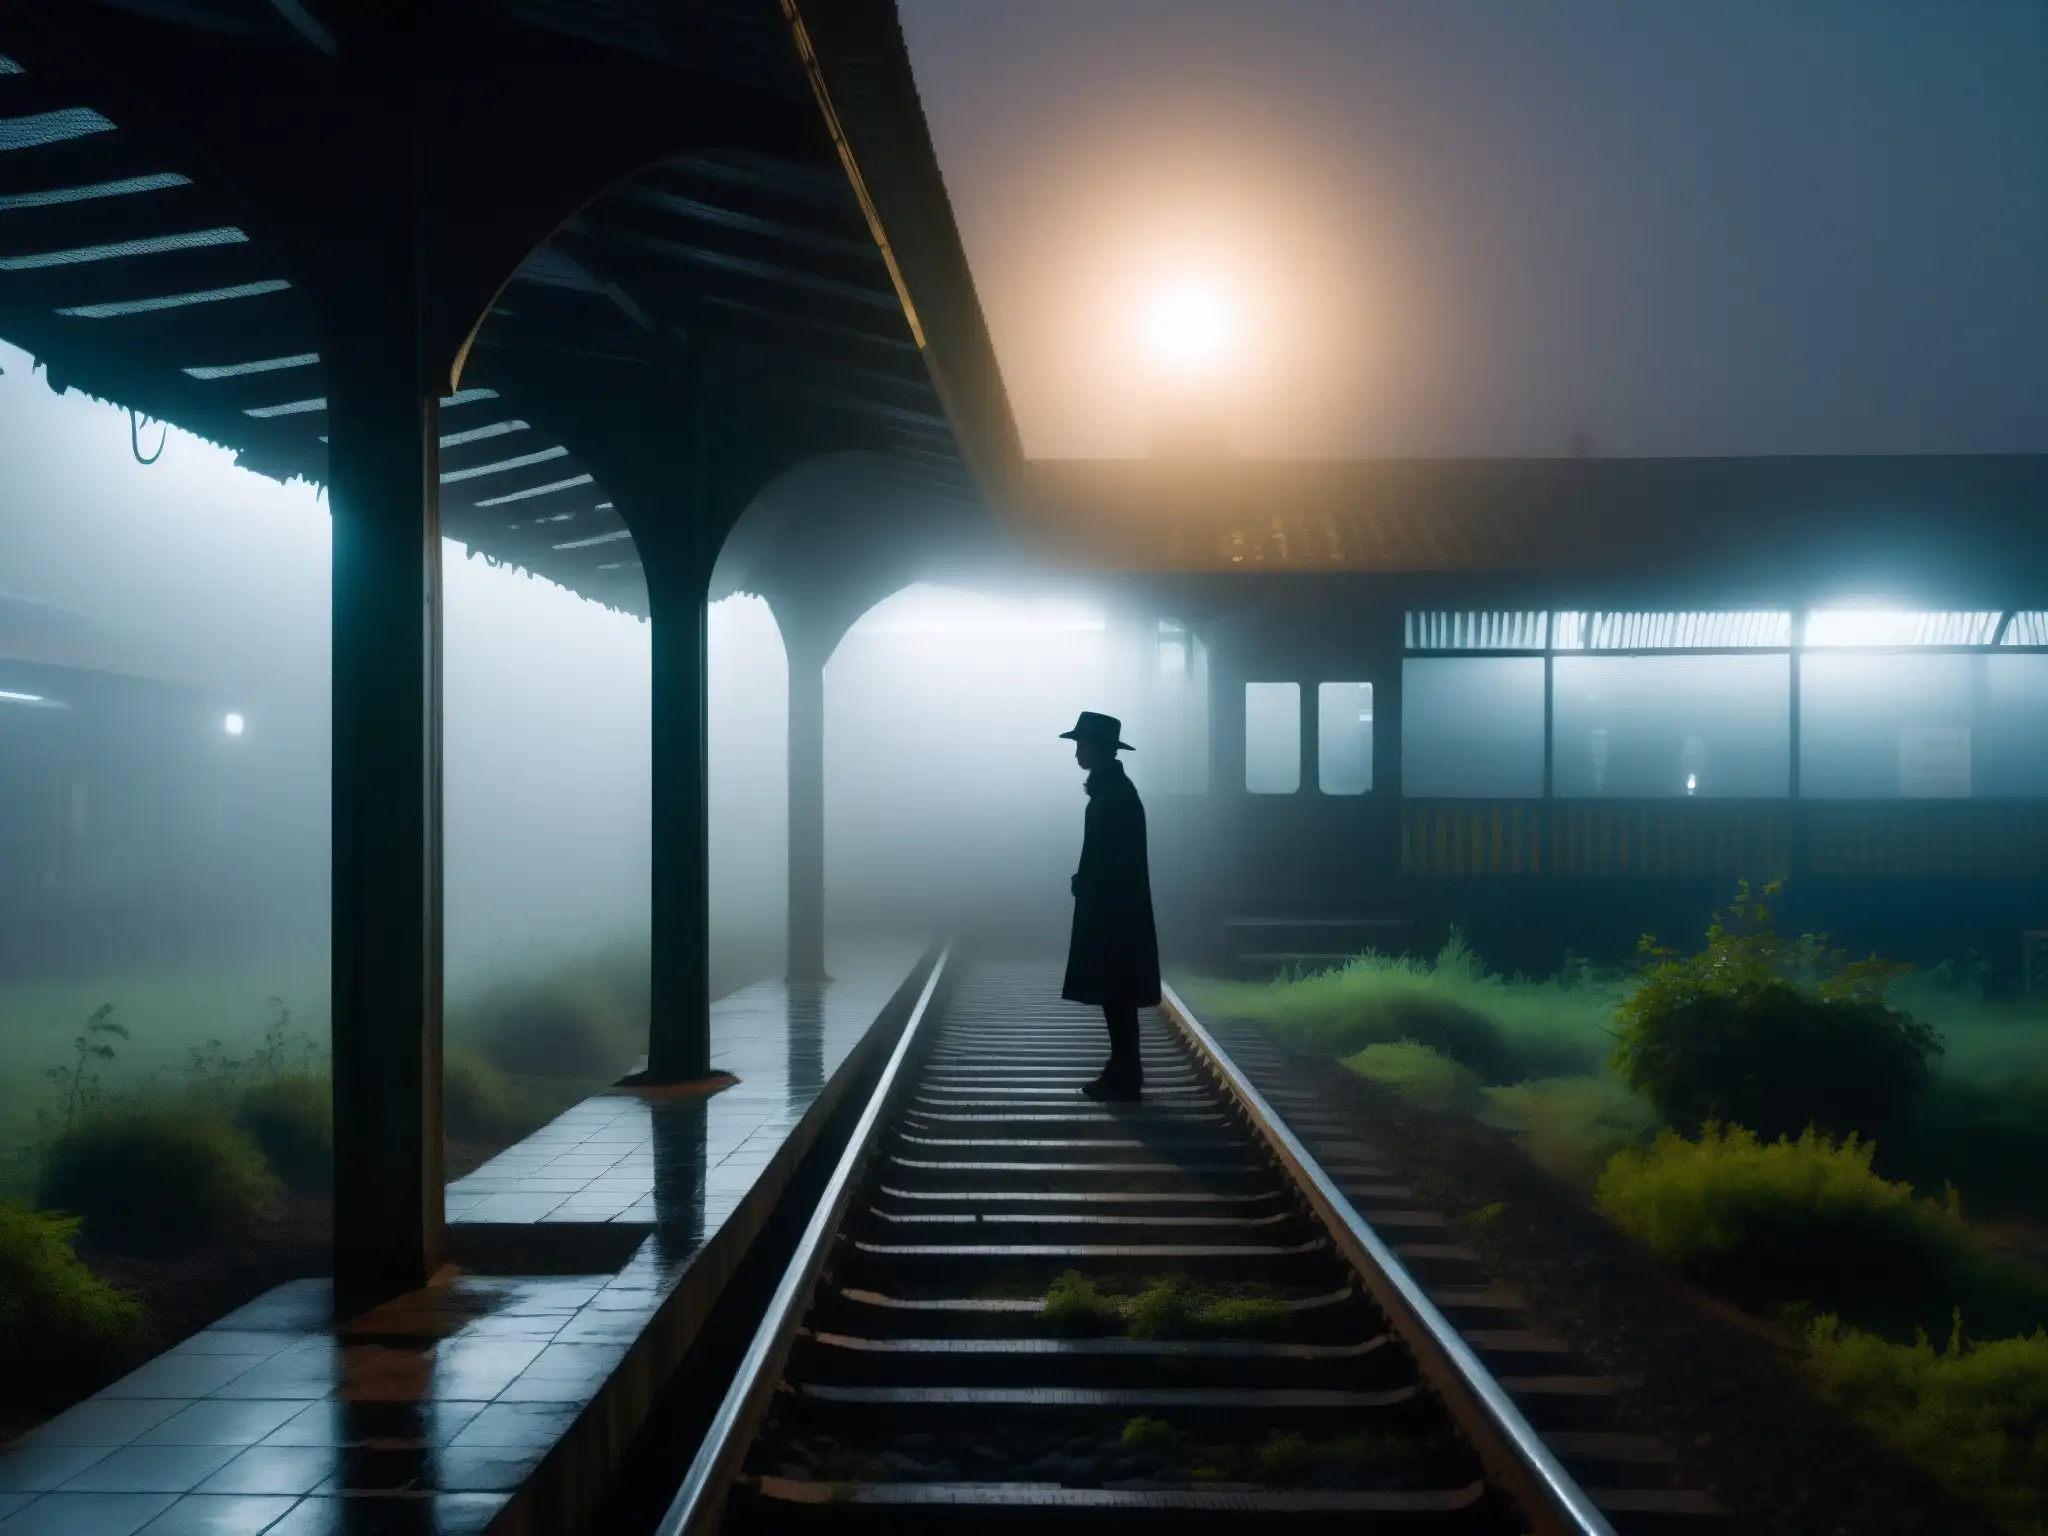 Un niño fantasmal se vislumbra en la estación de ferrocarril Begunkodor, envuelto en neblina y misterio